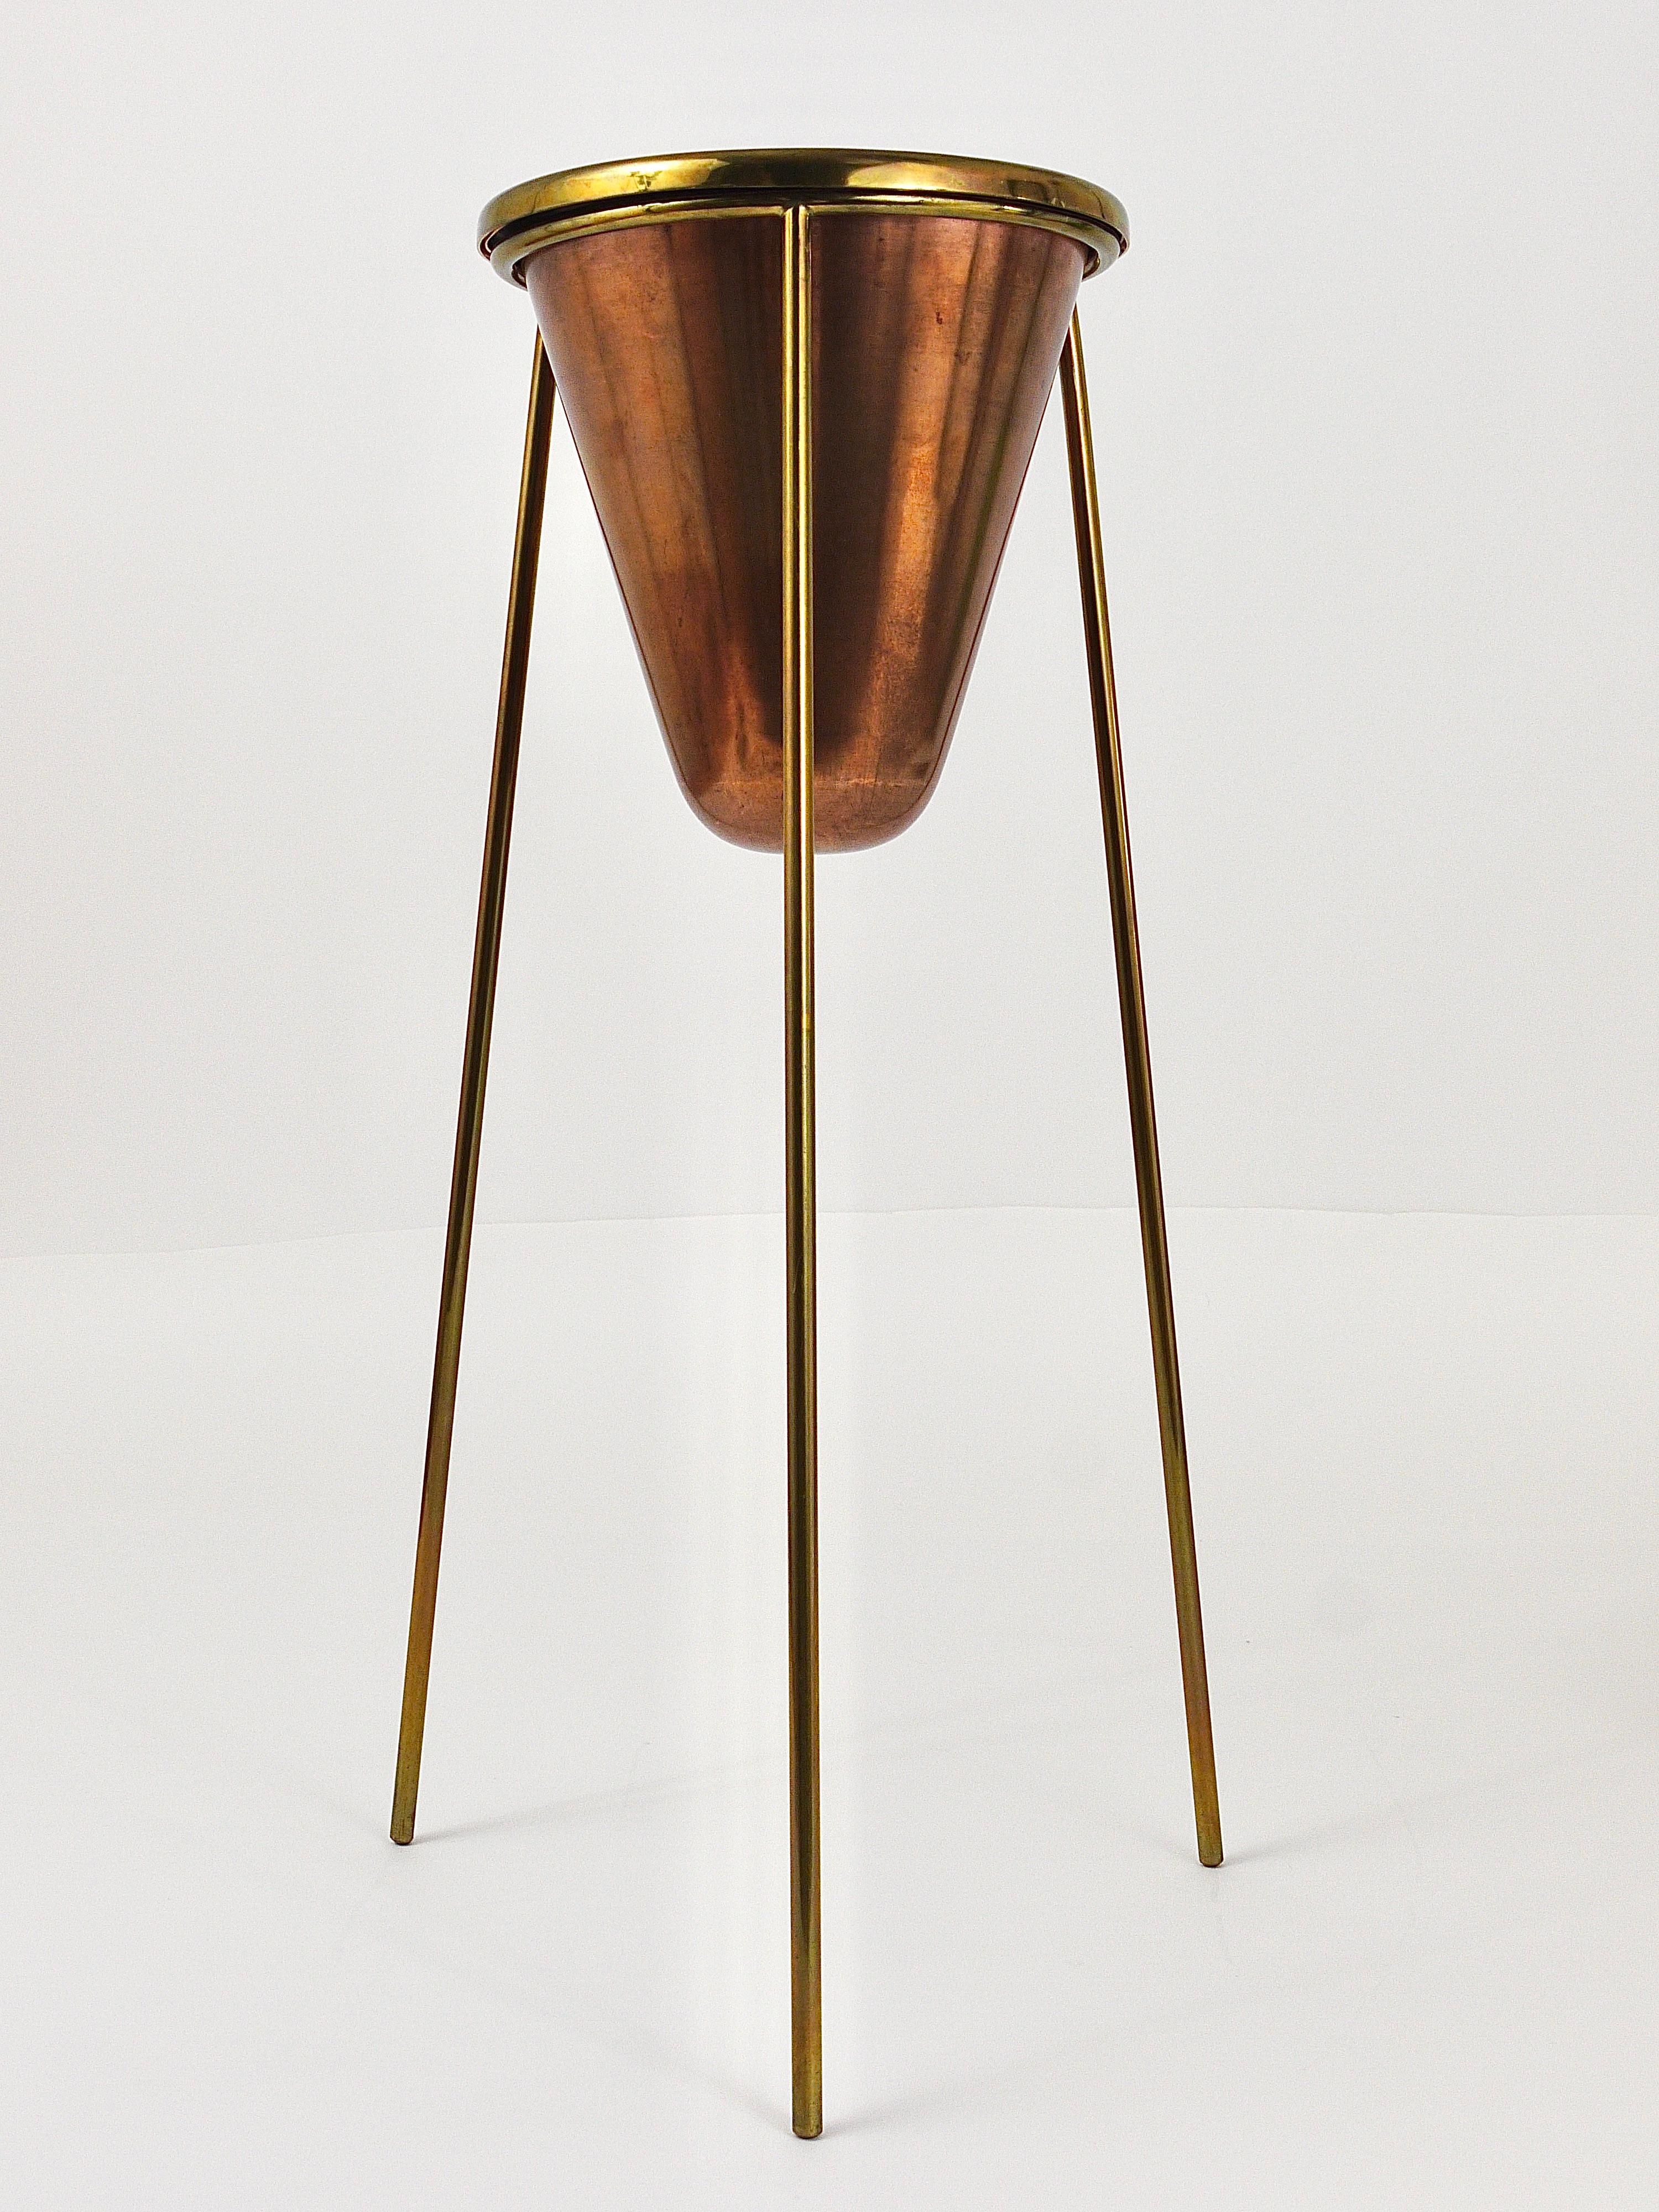 Ein seltener modernistischer Standaschenbecher aus den 1950er Jahren, entworfen und ausgeführt von Carl Auböck, Wien. Die Schale dieses schönen und authentischen Aschenbechers ist aus Kupfer, der dreibeinige Sockel und der Ring an der Oberseite sind